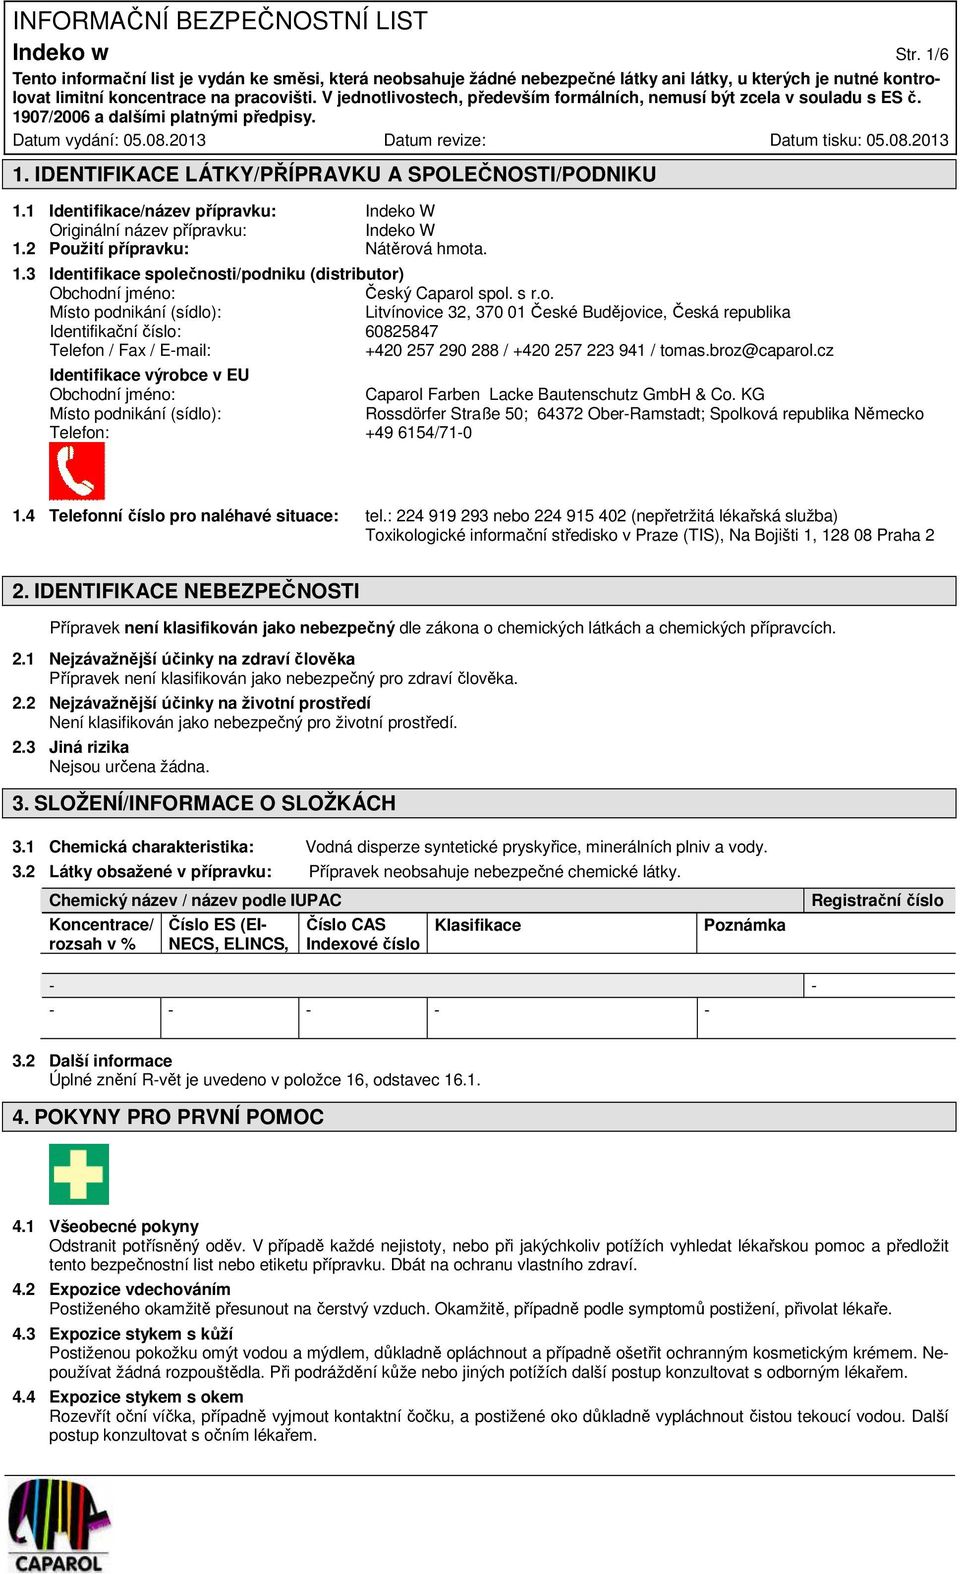 cz Identifikace výrobce v EU Obchodní jméno: Caparol Farben Lacke Bautenschutz GmbH & Co.